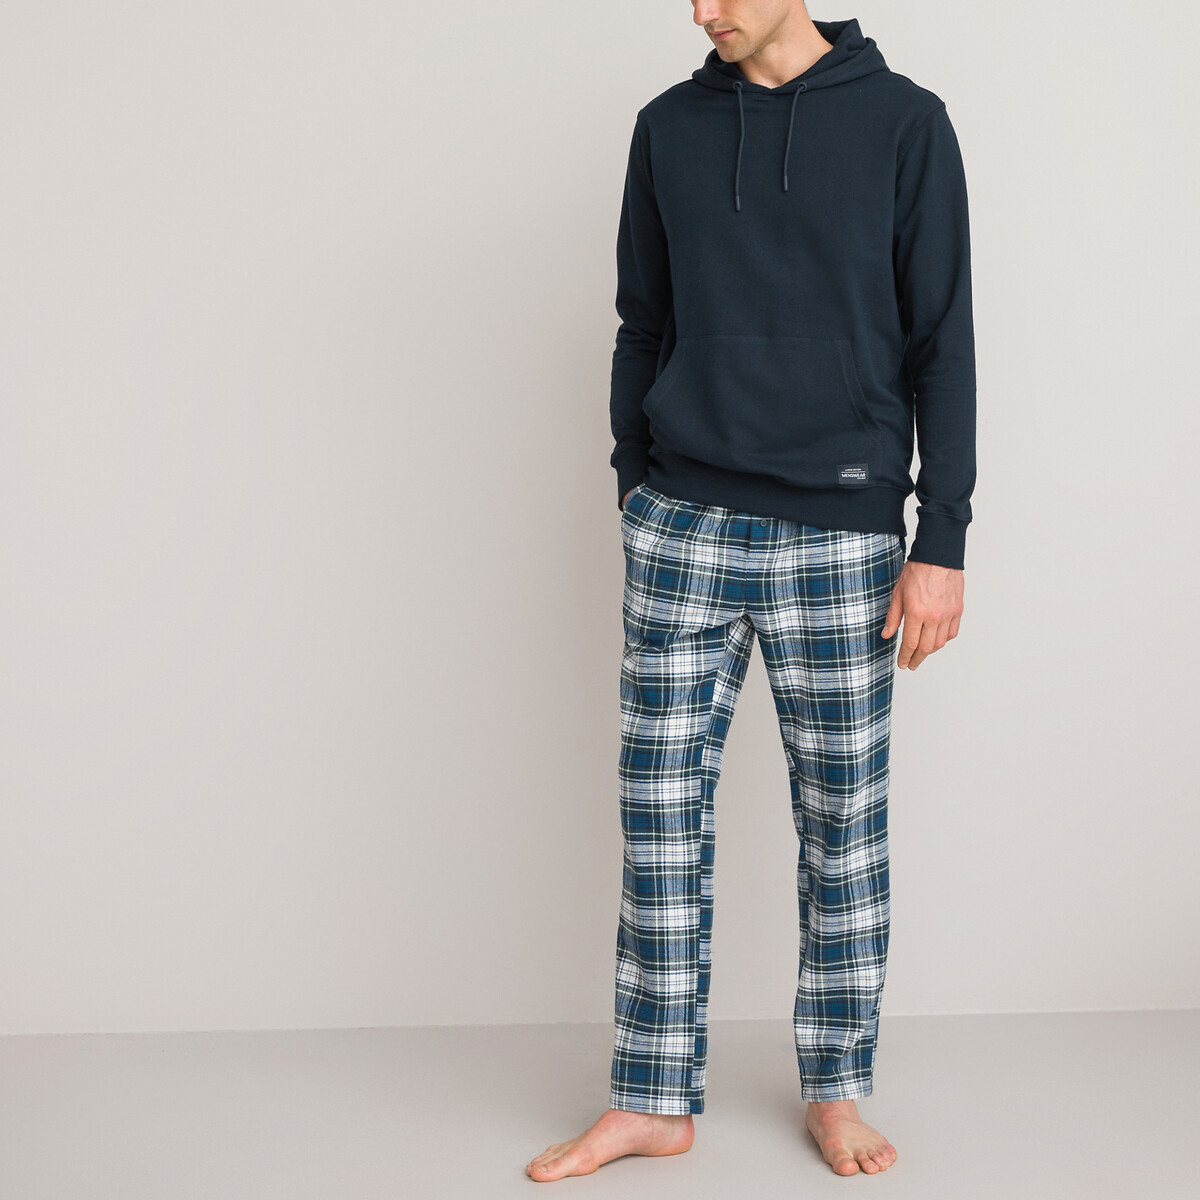 Fenteer Vetements dhôpital Homme Pyjama Hauts Pantalon Costume pour patients 